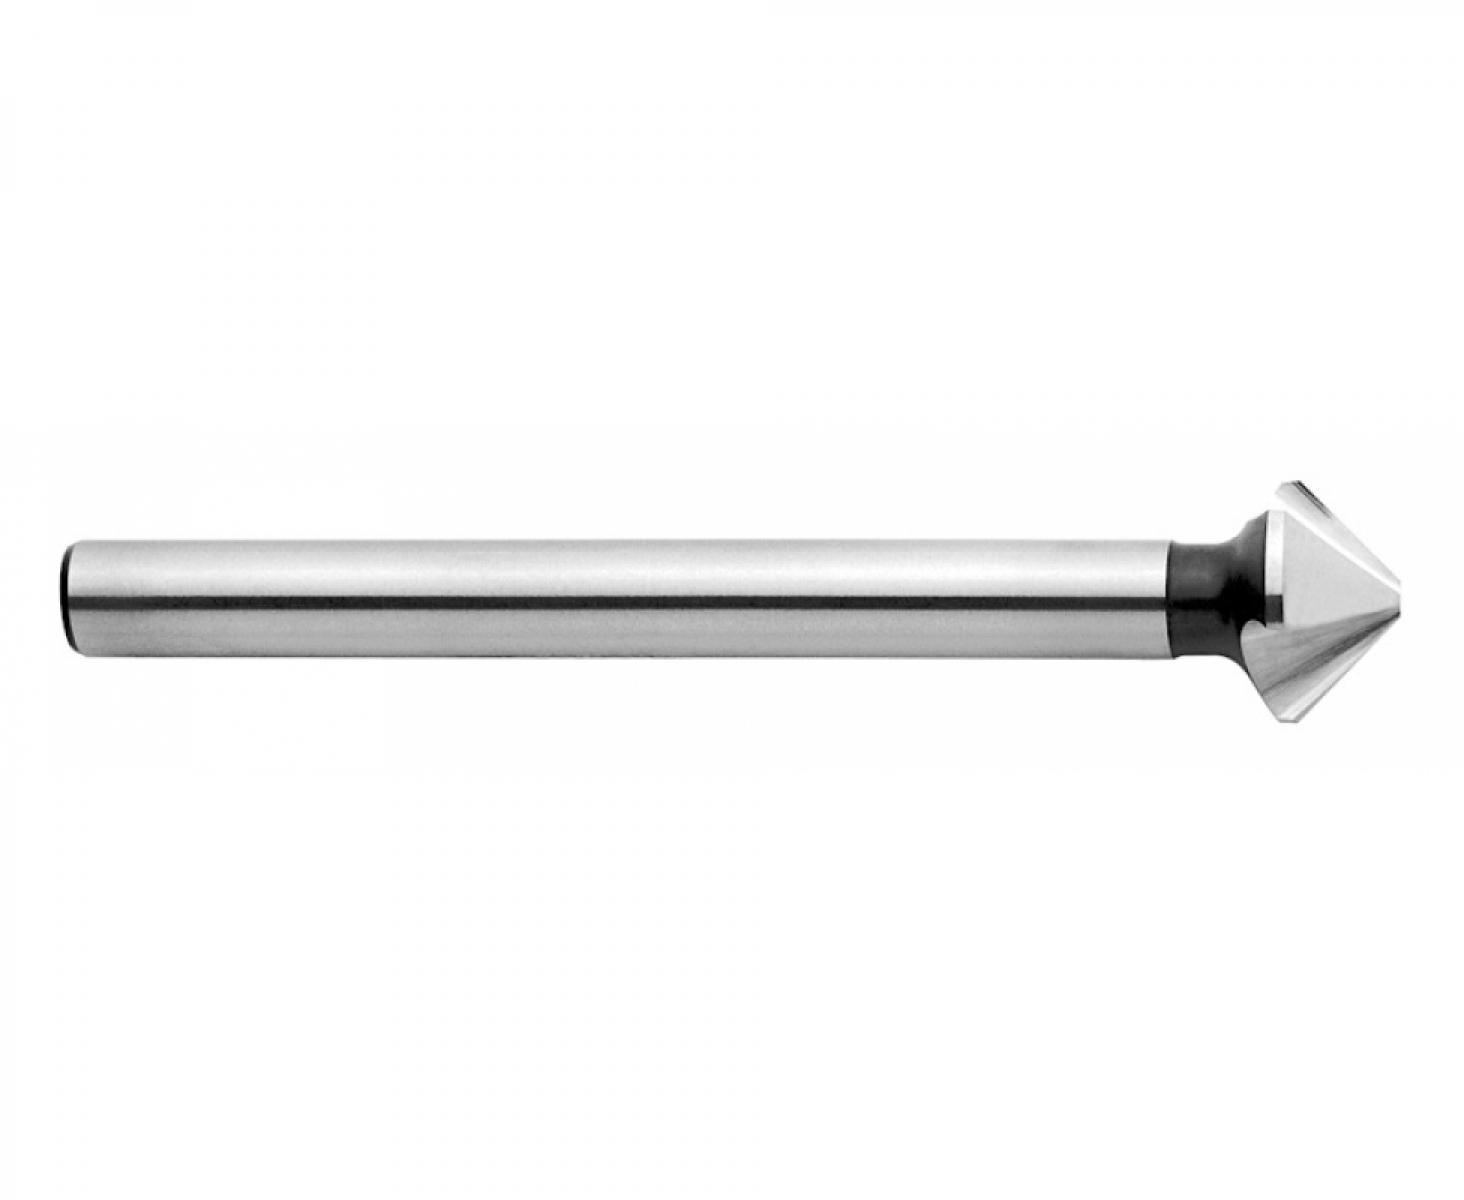 Зенкер конический 90° 6,3 мм DIN 335 C Exact GQ-50701 3 режущих кромки цилиндрический хвостовик длинный